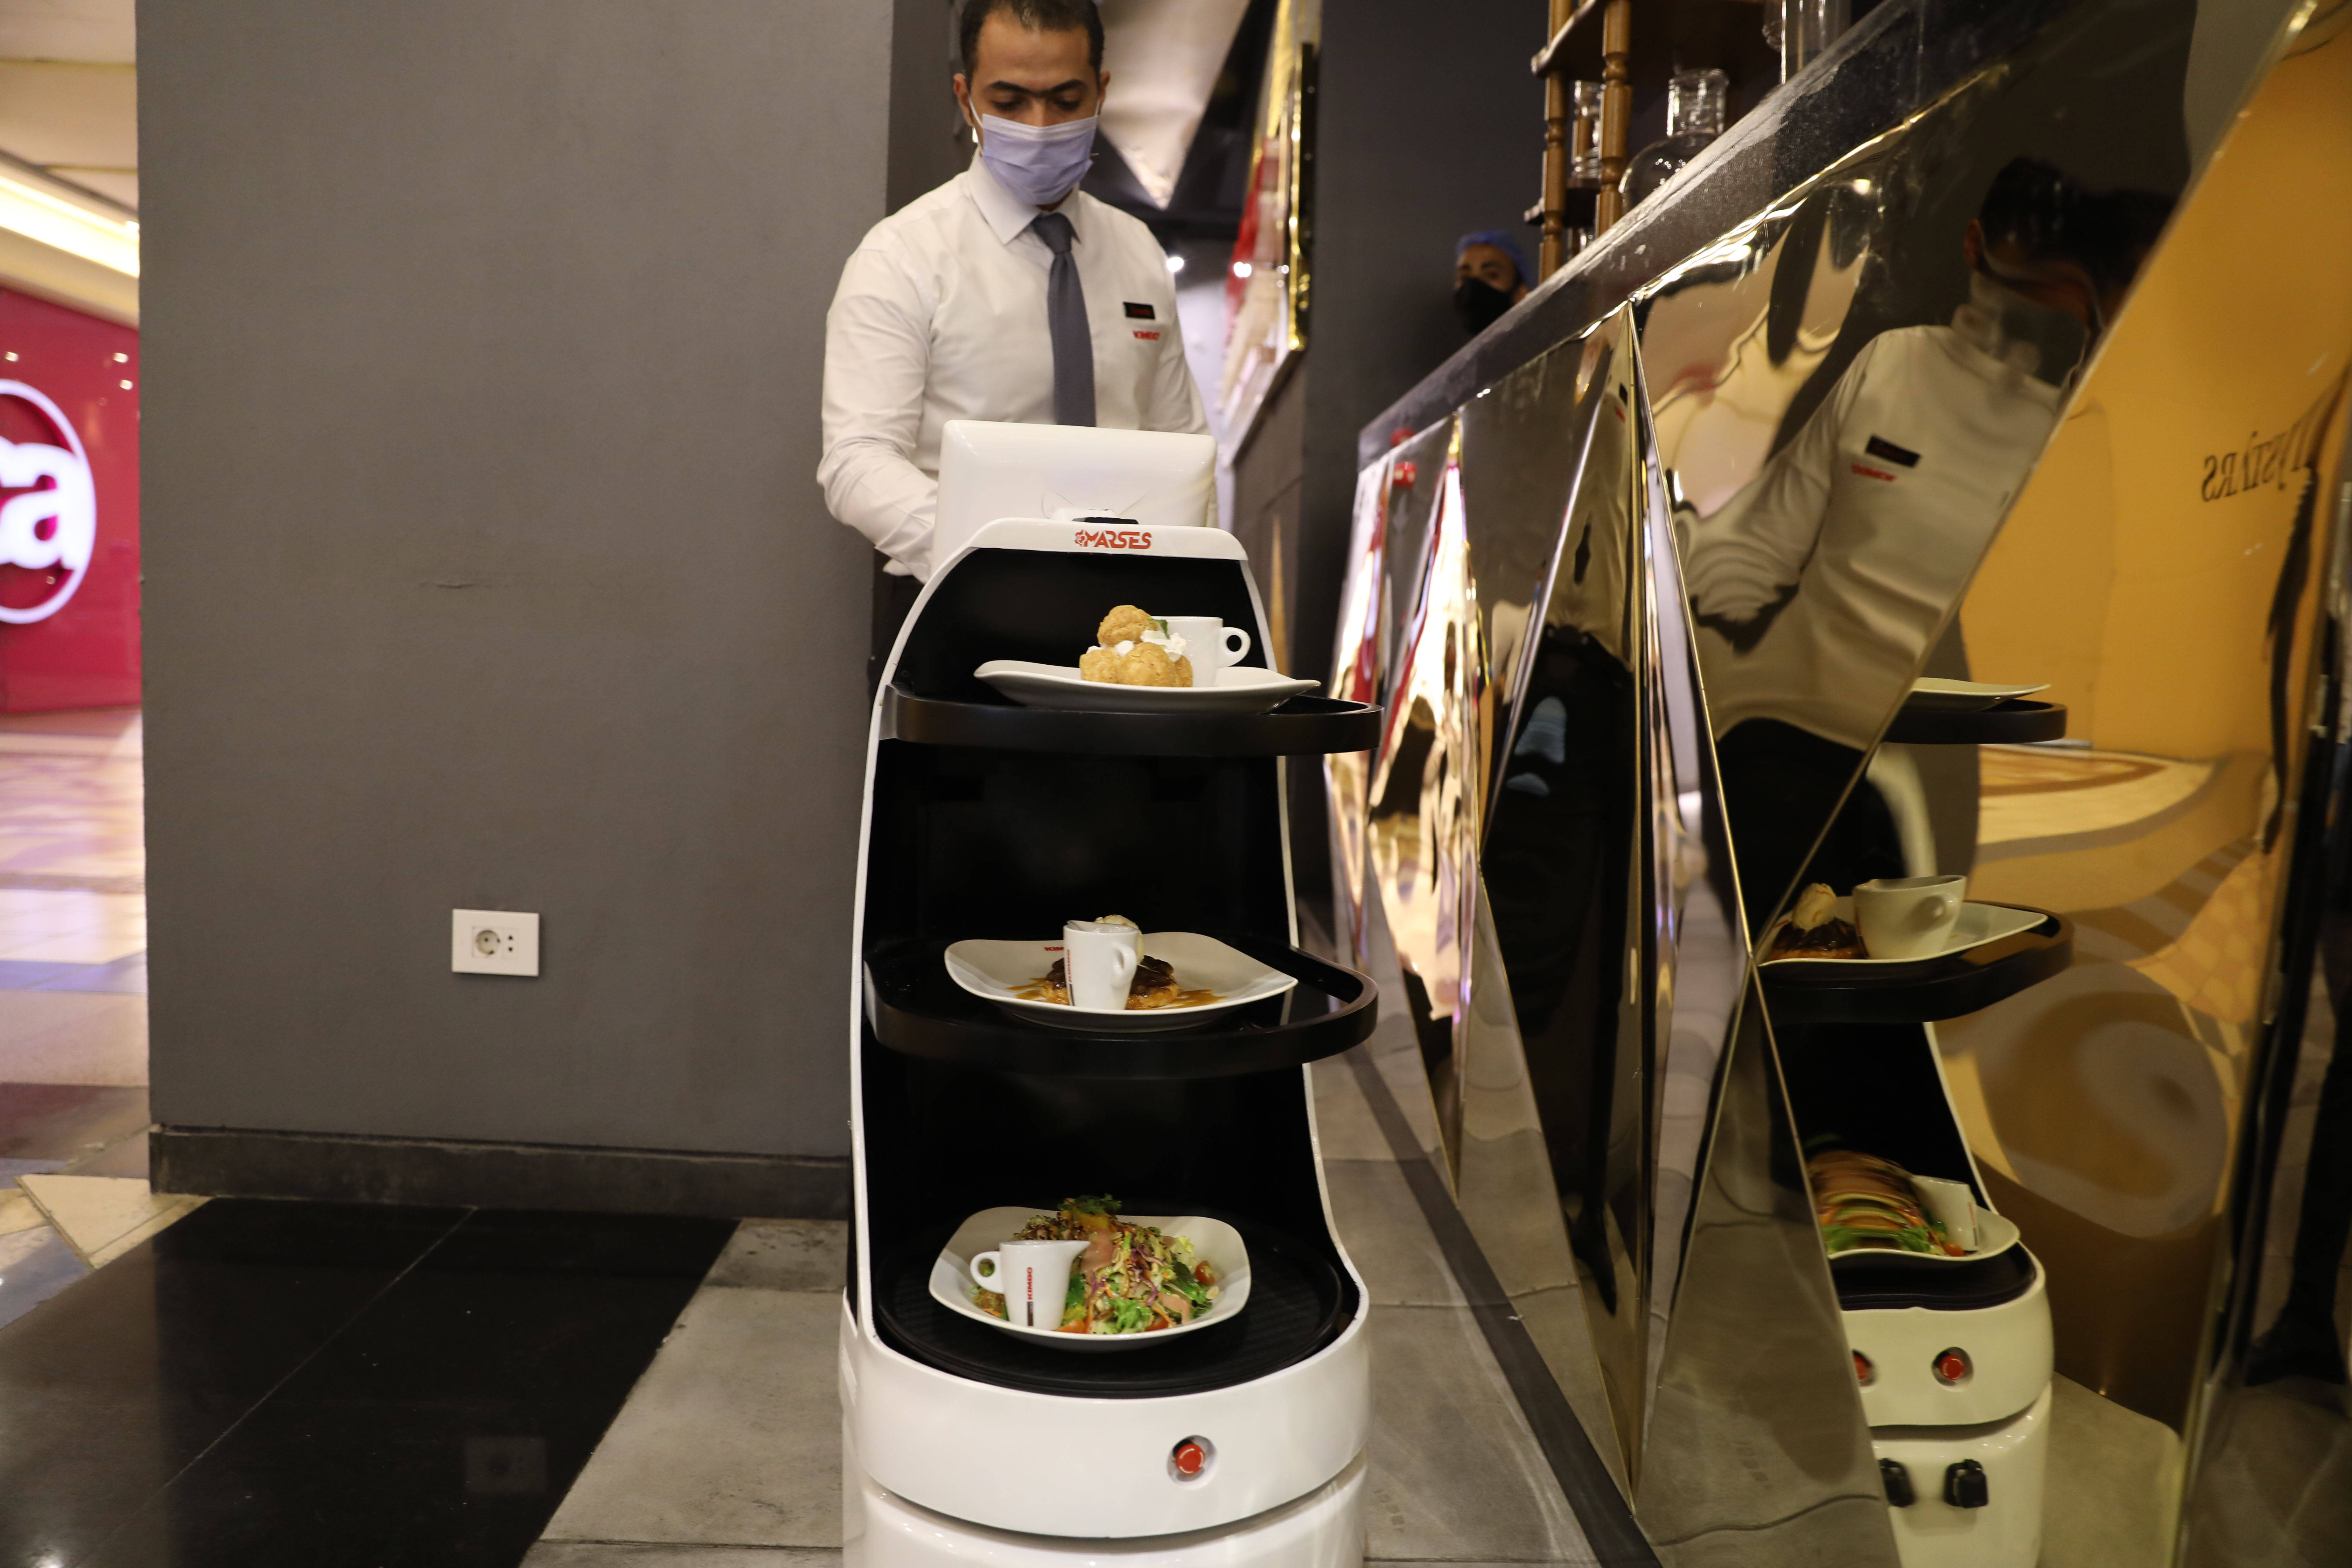 埃及:机器人上菜助力保持社交距离